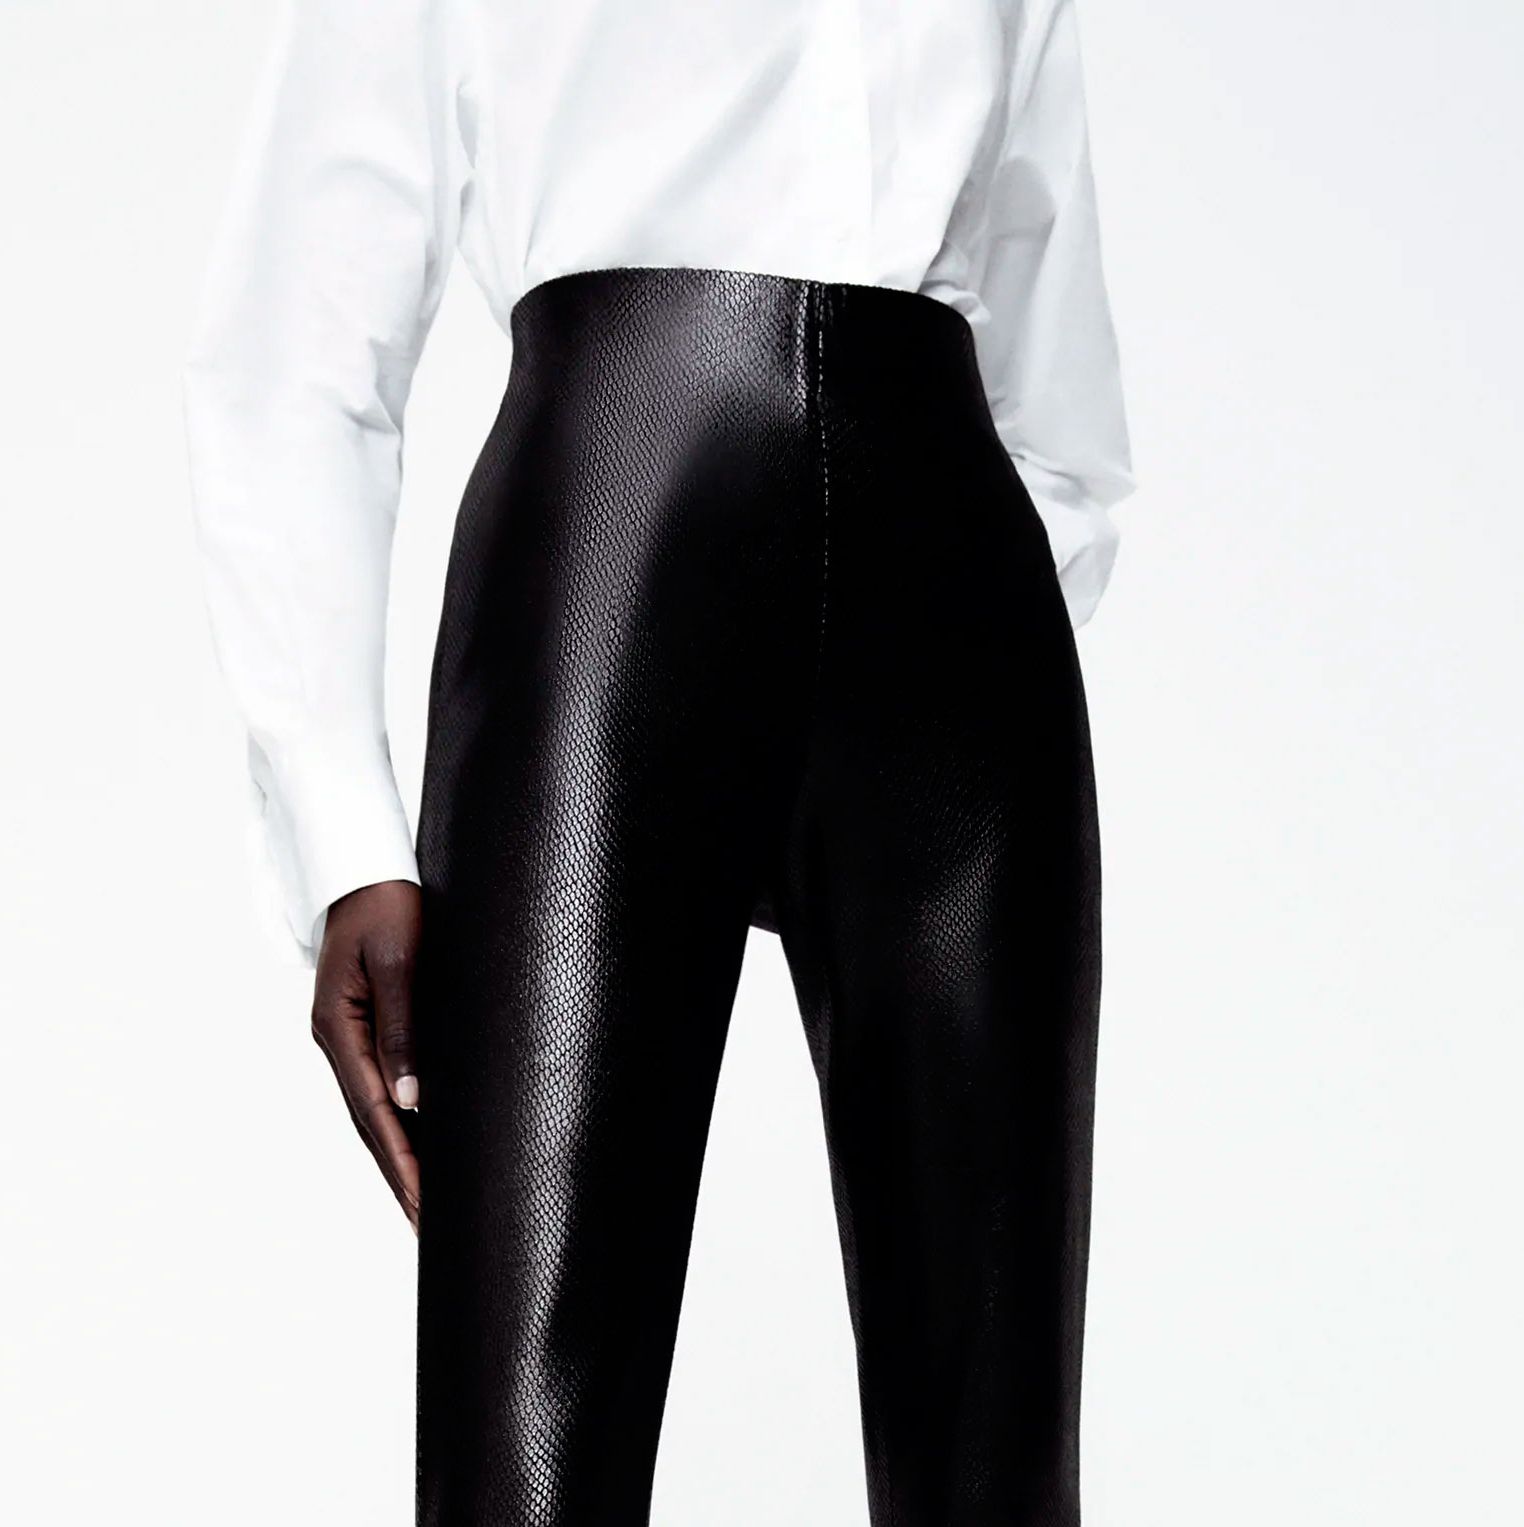 Los leggings negros de vestir de Zara que moldean el cuerpo